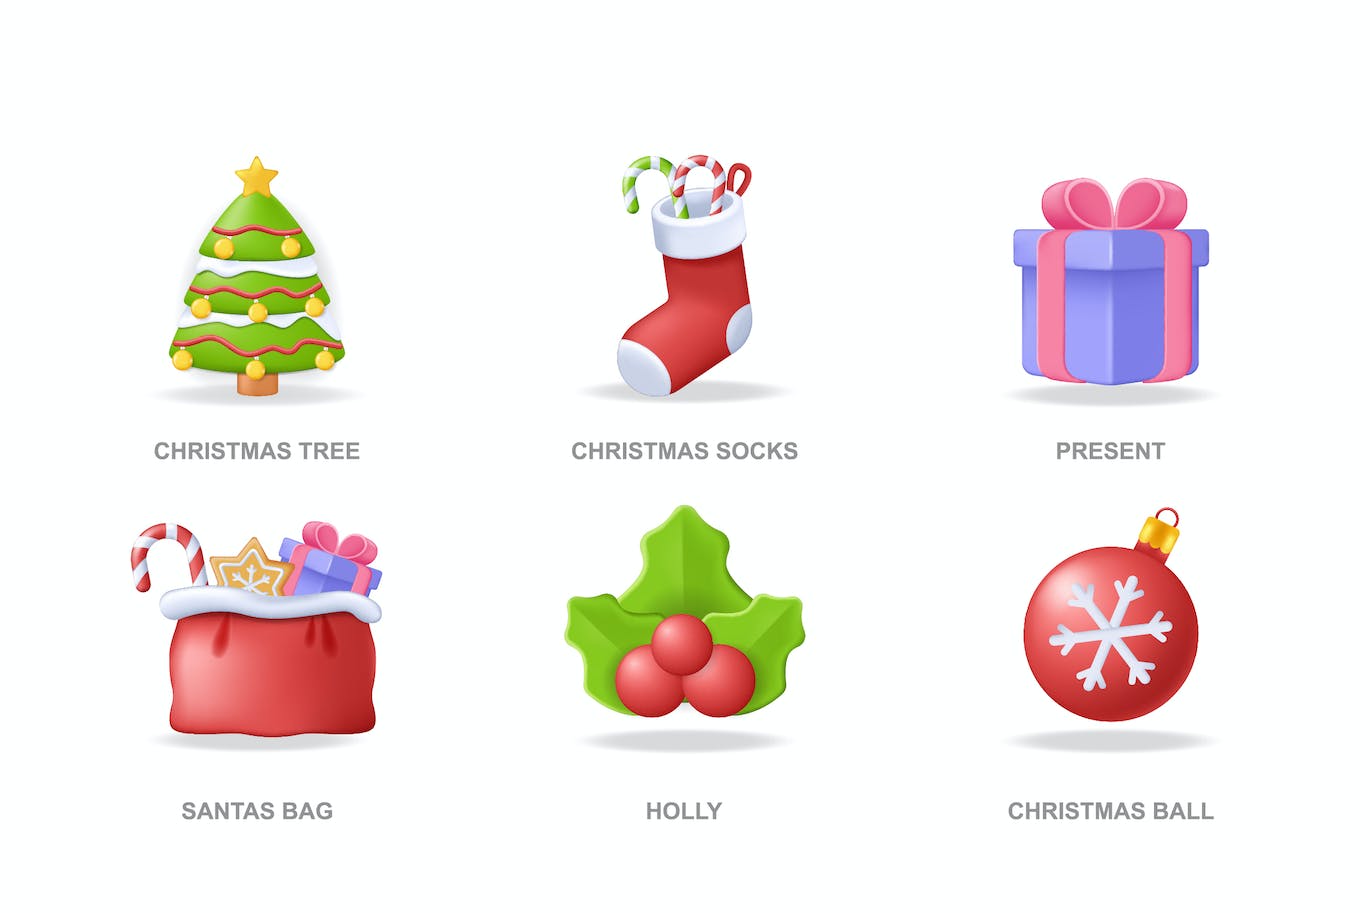 现代设计的圣诞3D图标 (AI,EPS,JPG,PNG,SVG)